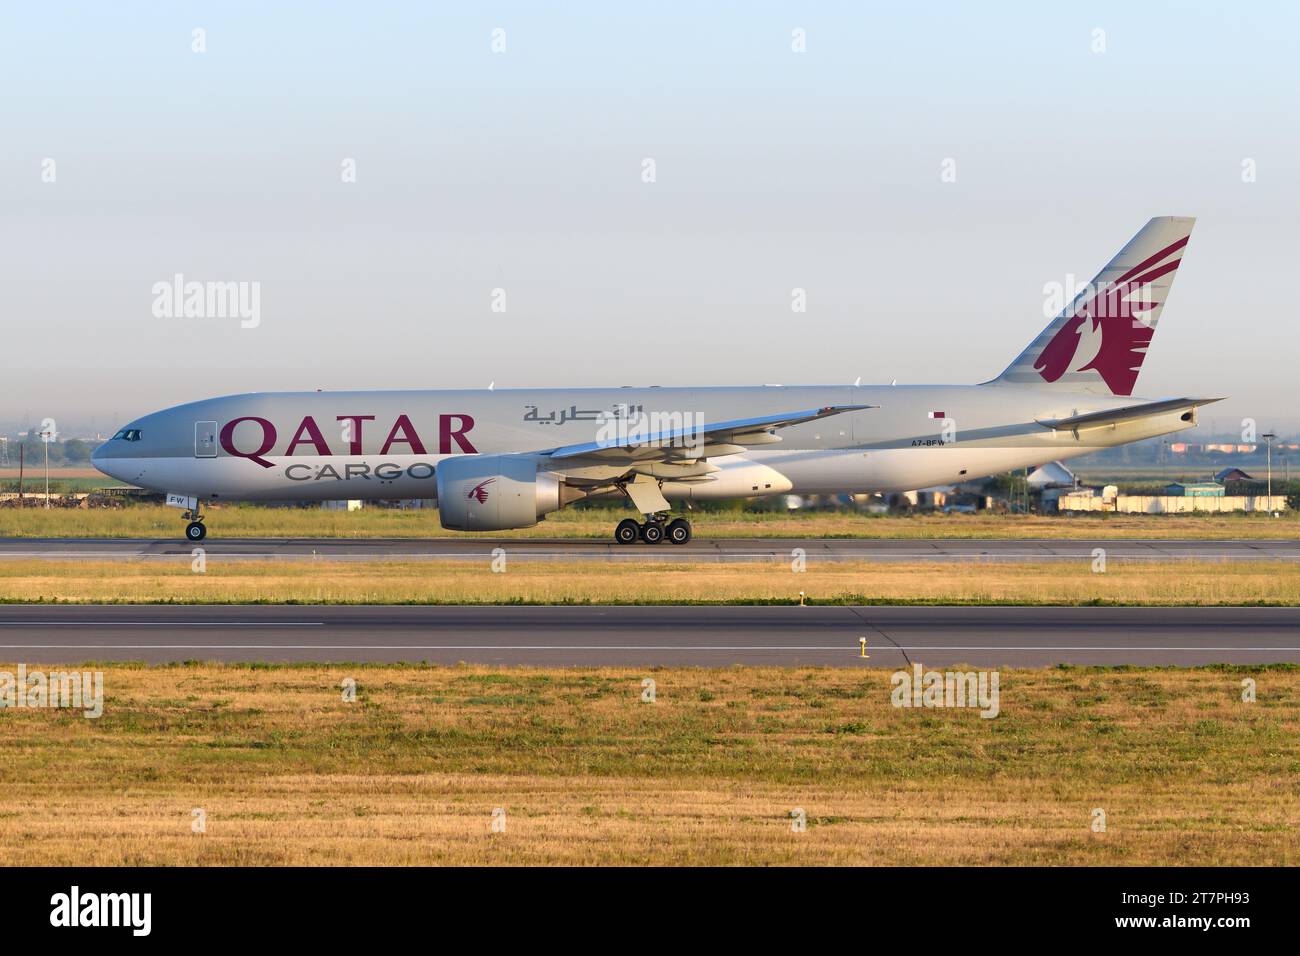 Qatar Cargo Boeing 777F Flugzeug im Rollen. Flugzeug des Modells 777 für den Frachttransport von Katar Cargo. Stockfoto